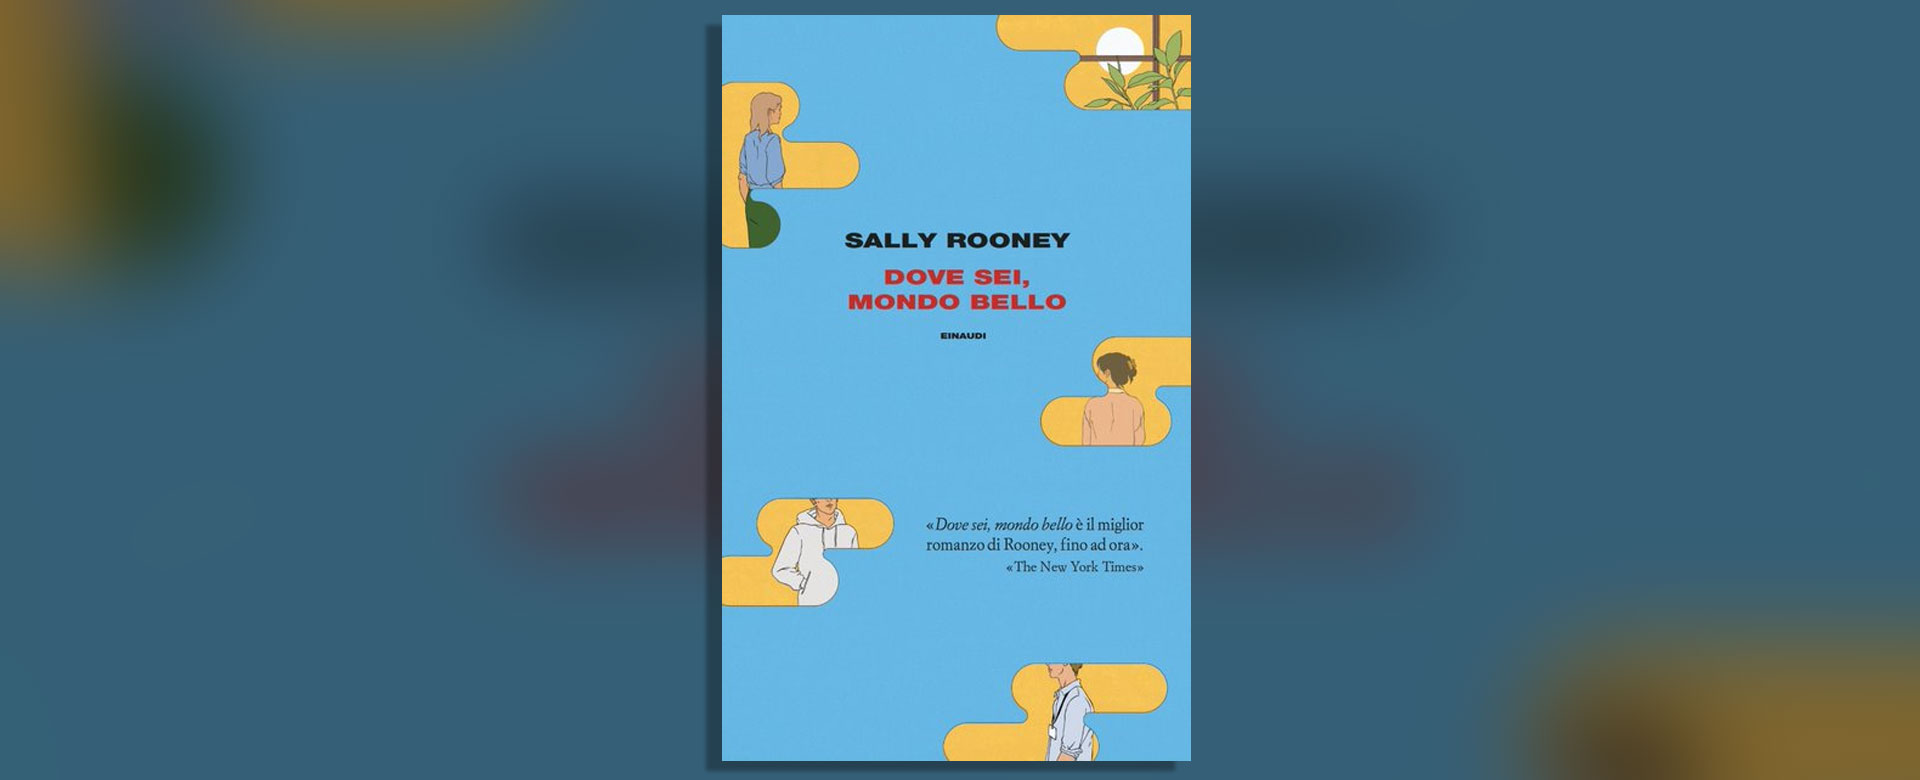 Dove sei, mondo bello: Sally Rooney e una storia di amicizia e di